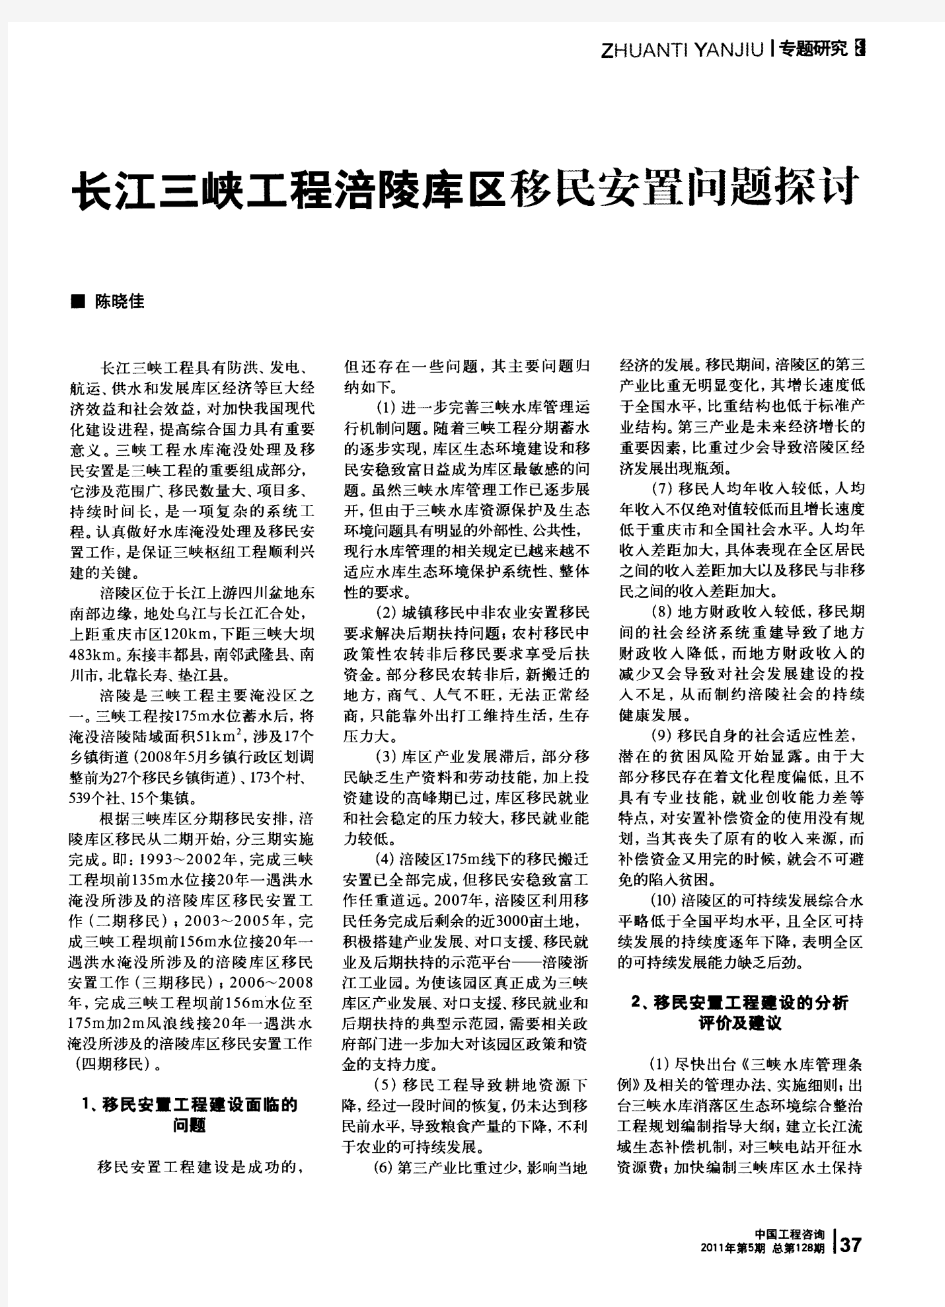 长江三峡工程涪陵库区移民安置问题探讨